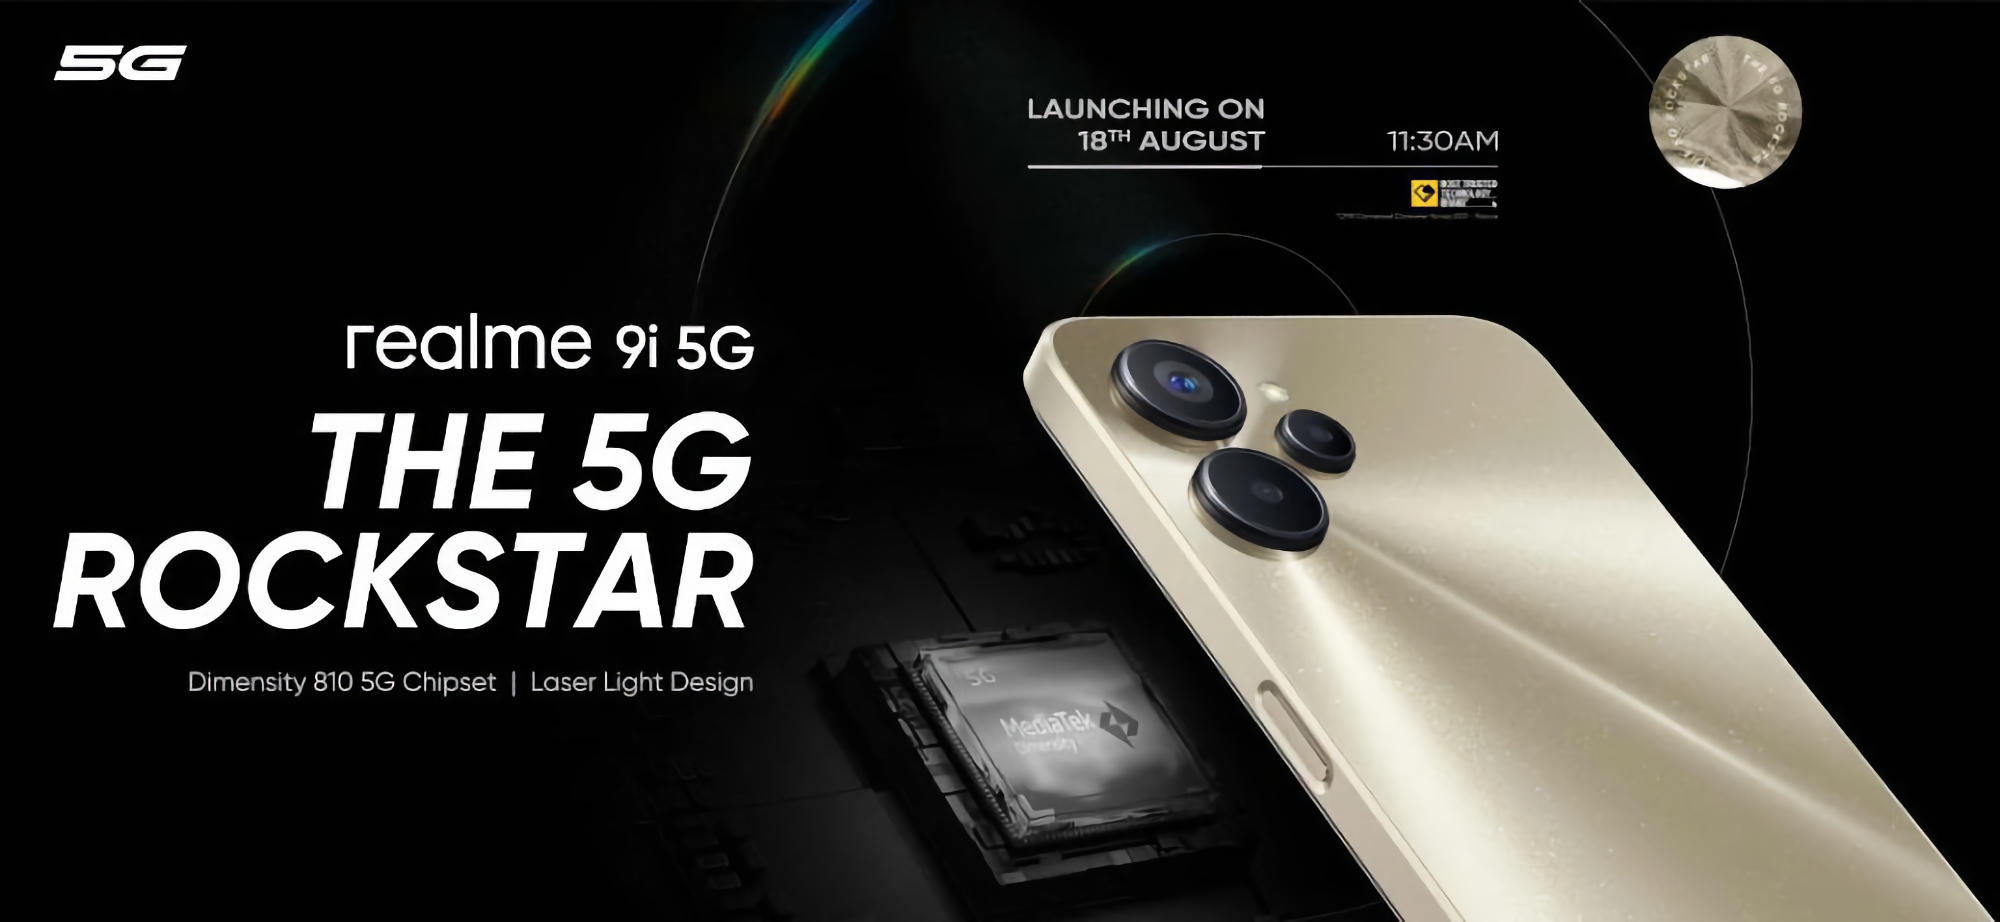 realme 9i 5G mit MediaTek Dimensity 810 Chip und Dreifach-Kamera wird am 18. August enthüllt